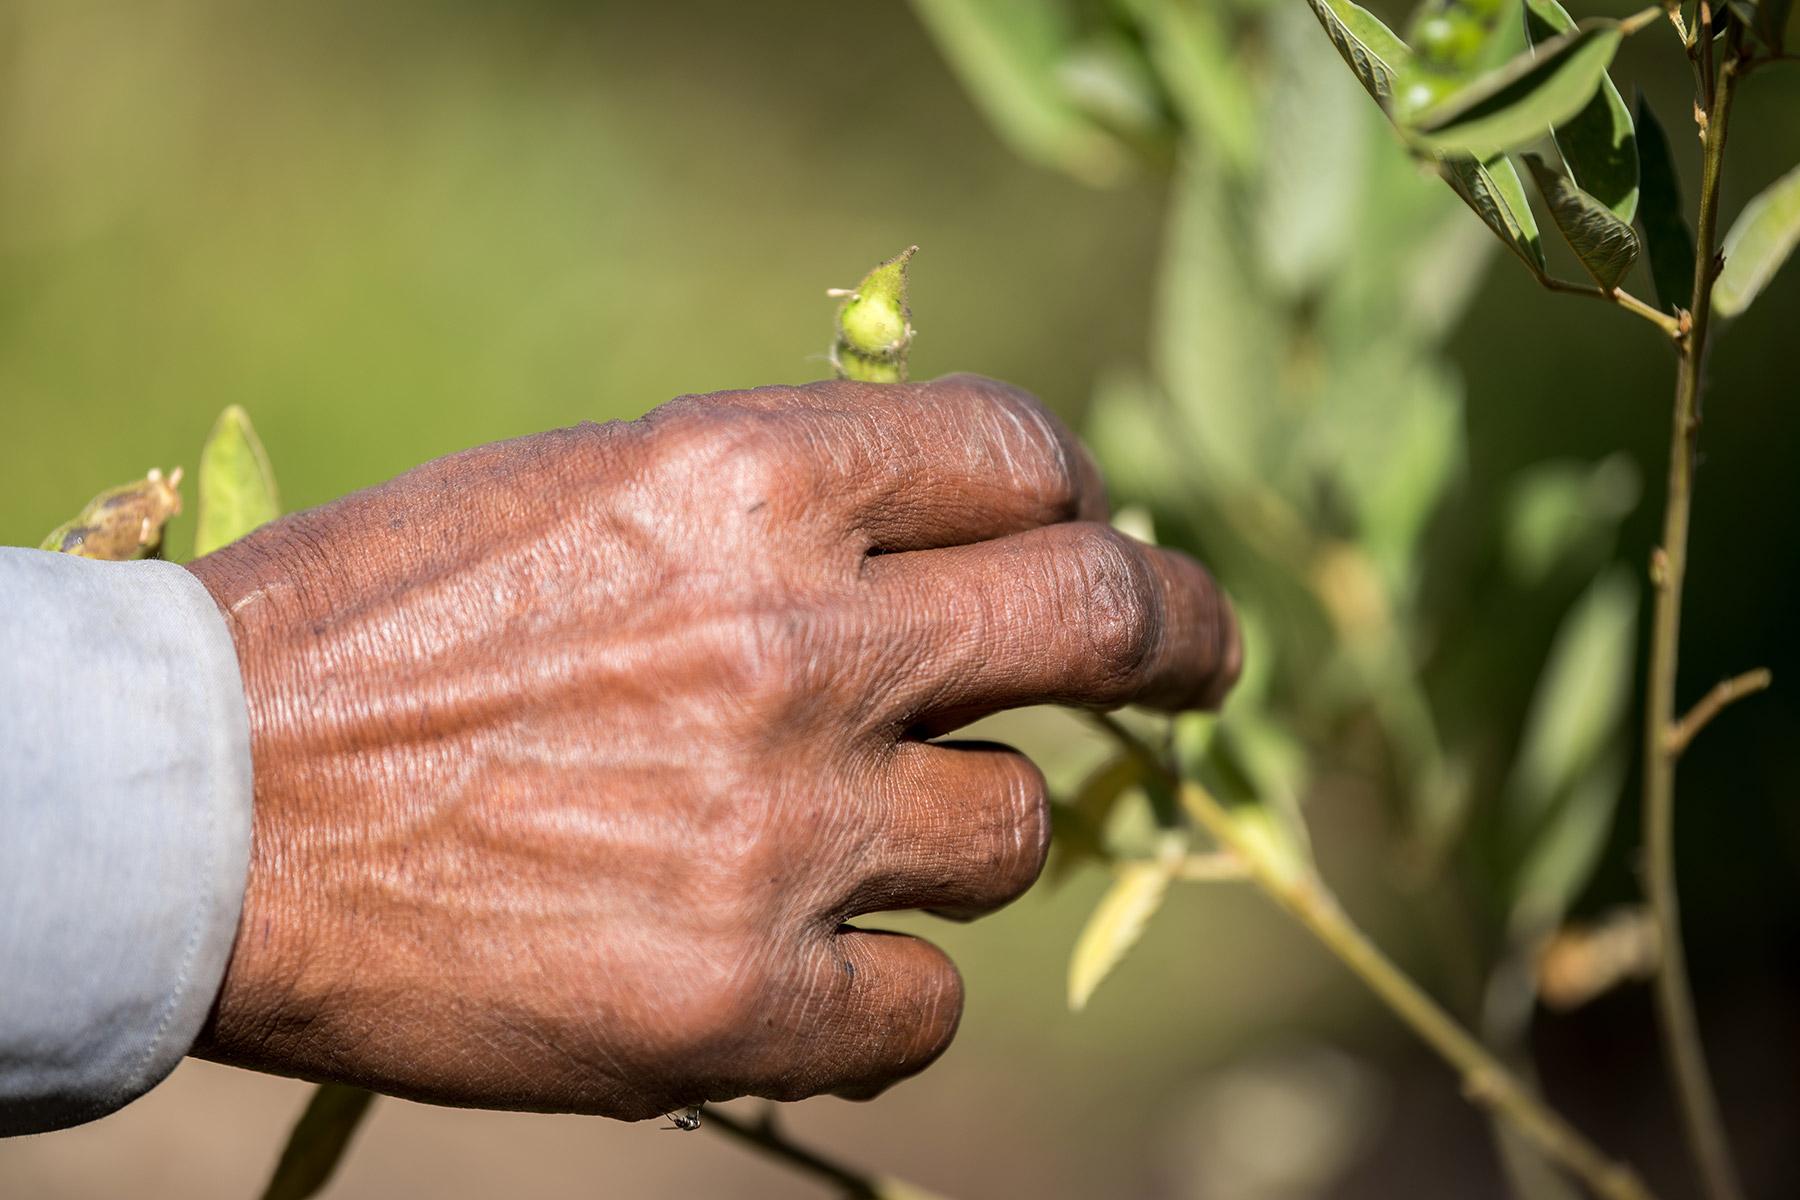 Äthiopien: Ernährungssicherheit durch Schulung in landwirtschaftlichen Methoden, die an das sich ändernde Klima angepasst sind. Foto: LWB/Albin Hillert